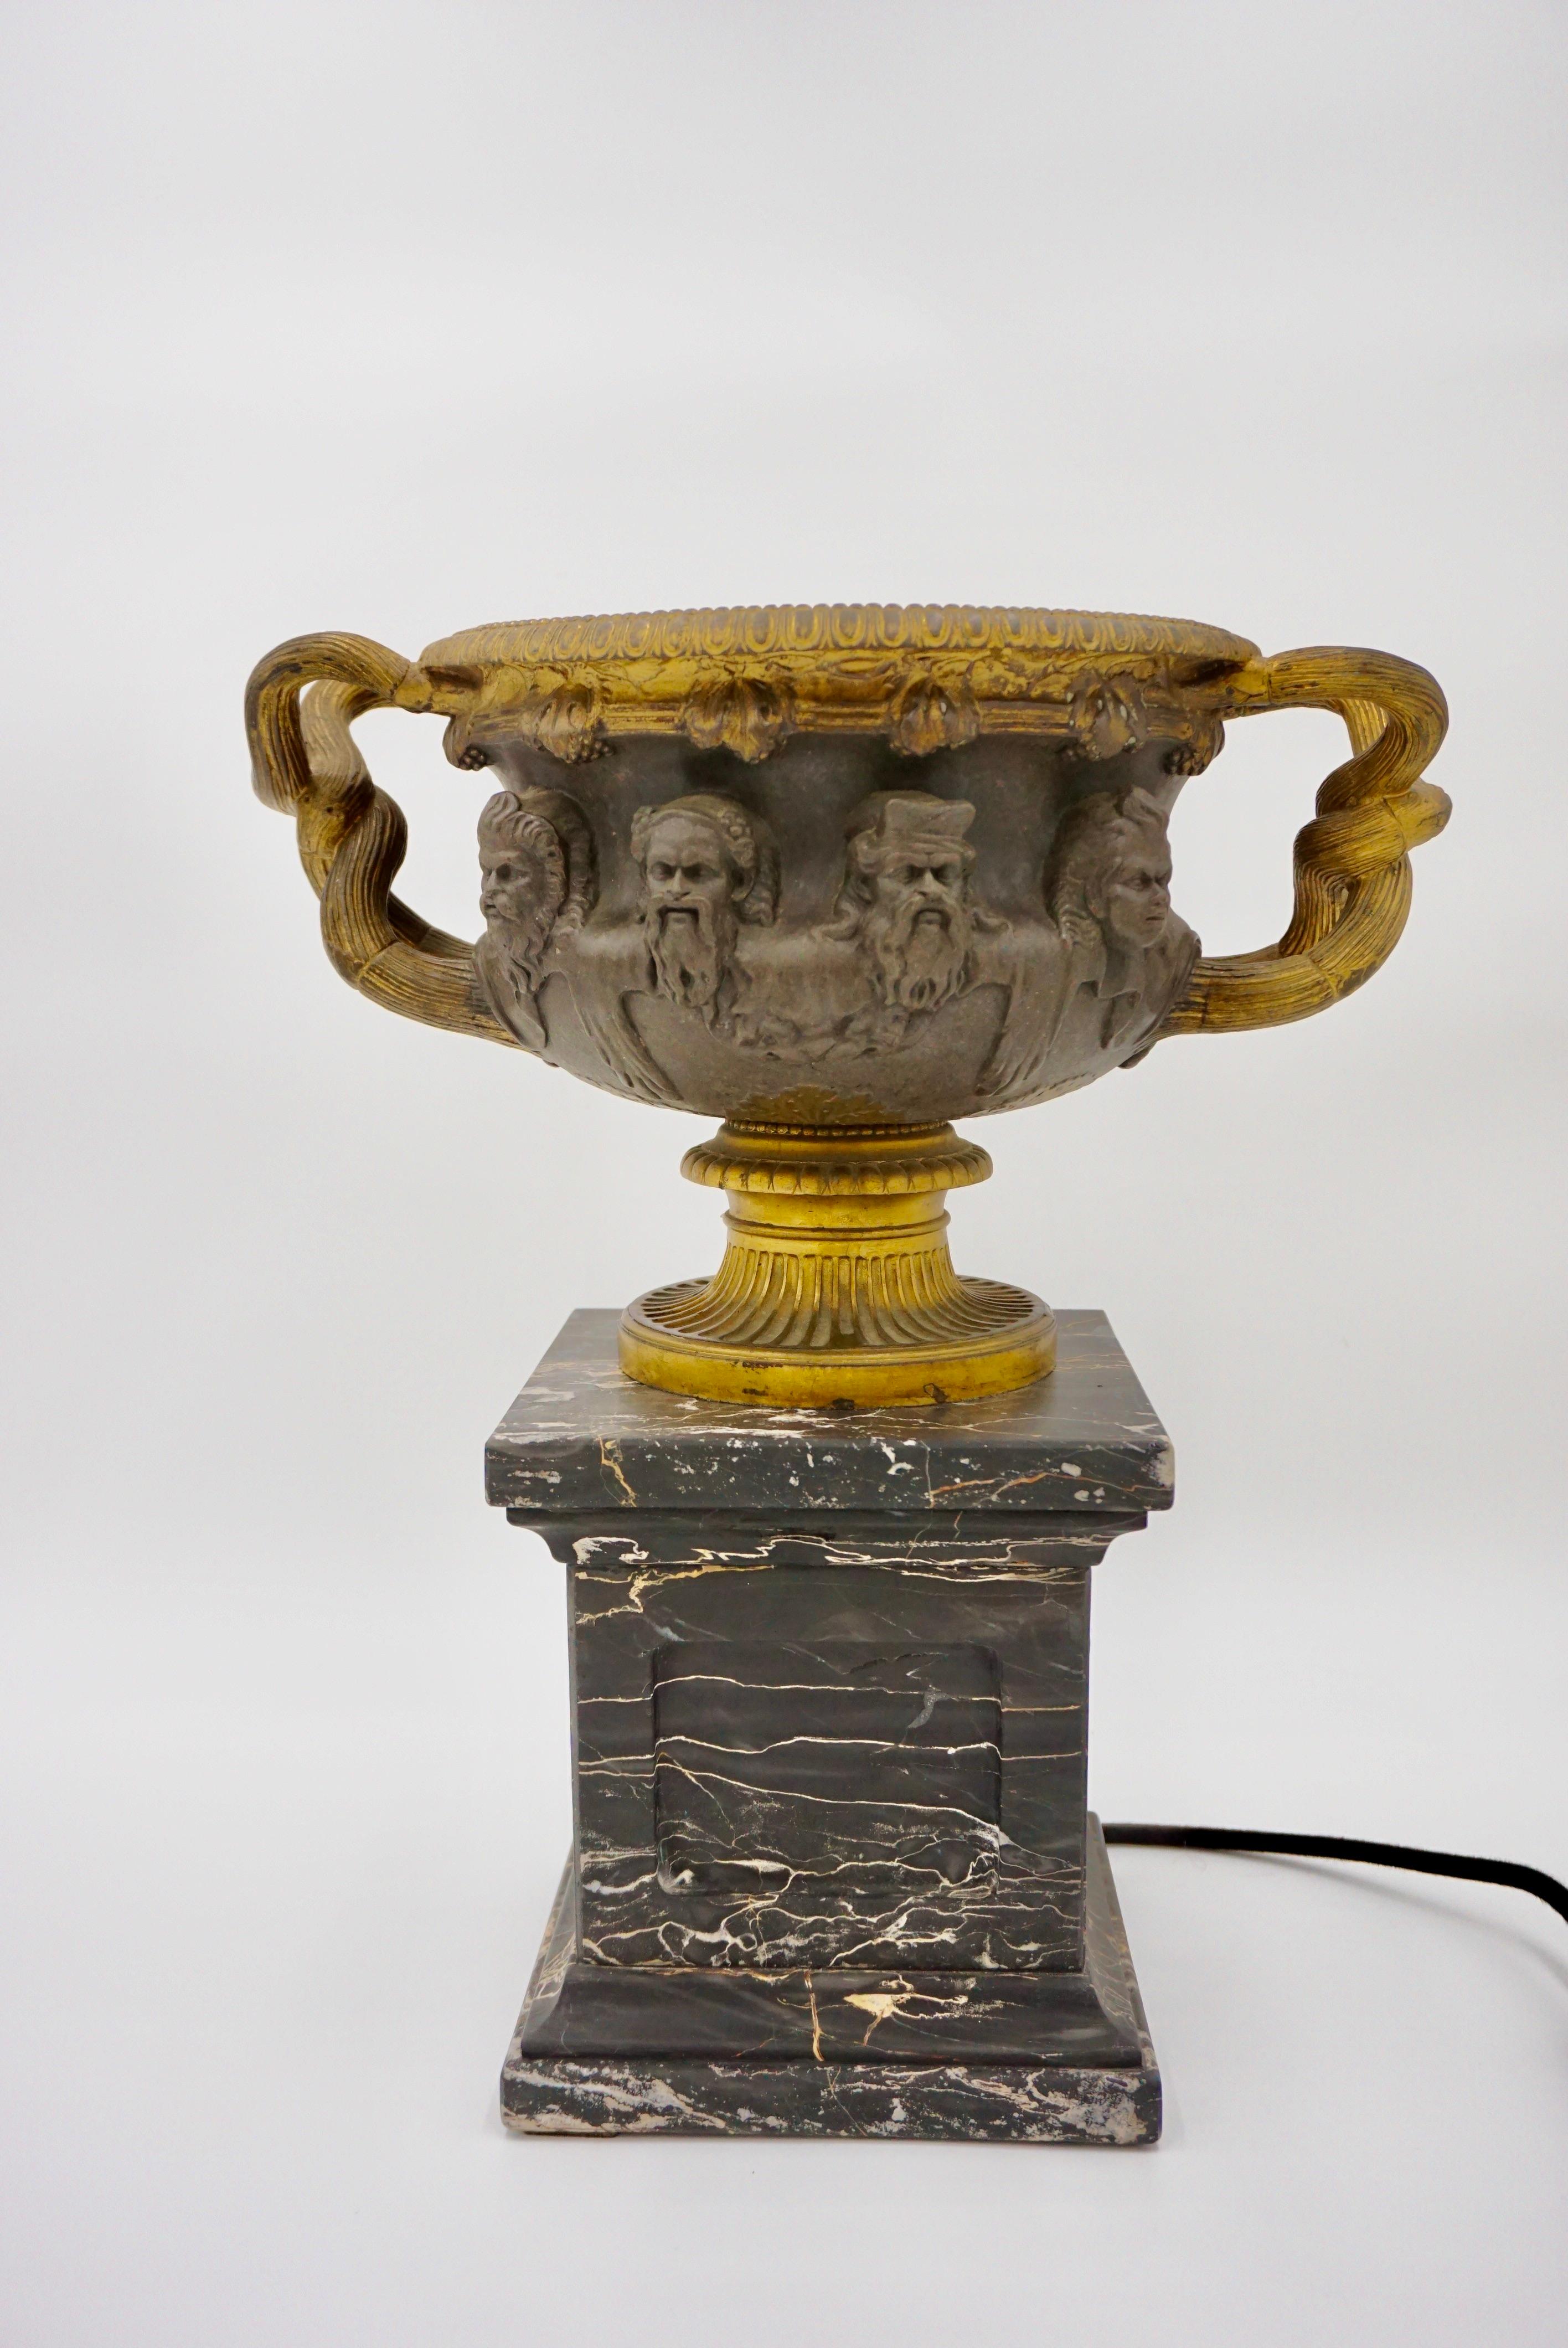 Große Vasenlampe 'Warwick' aus vergoldeter Bronze von Barbedienne, Paris um 1860, montiert auf einem Sockel aus Portoro-Marmor.
feine und originale Patina 
LED-Lampe 4w 230V
Maße: 35 X 23 cm, Höhe: 39cm; die Vase: 35 x 23cm Höhe: 20cm; der Sockel